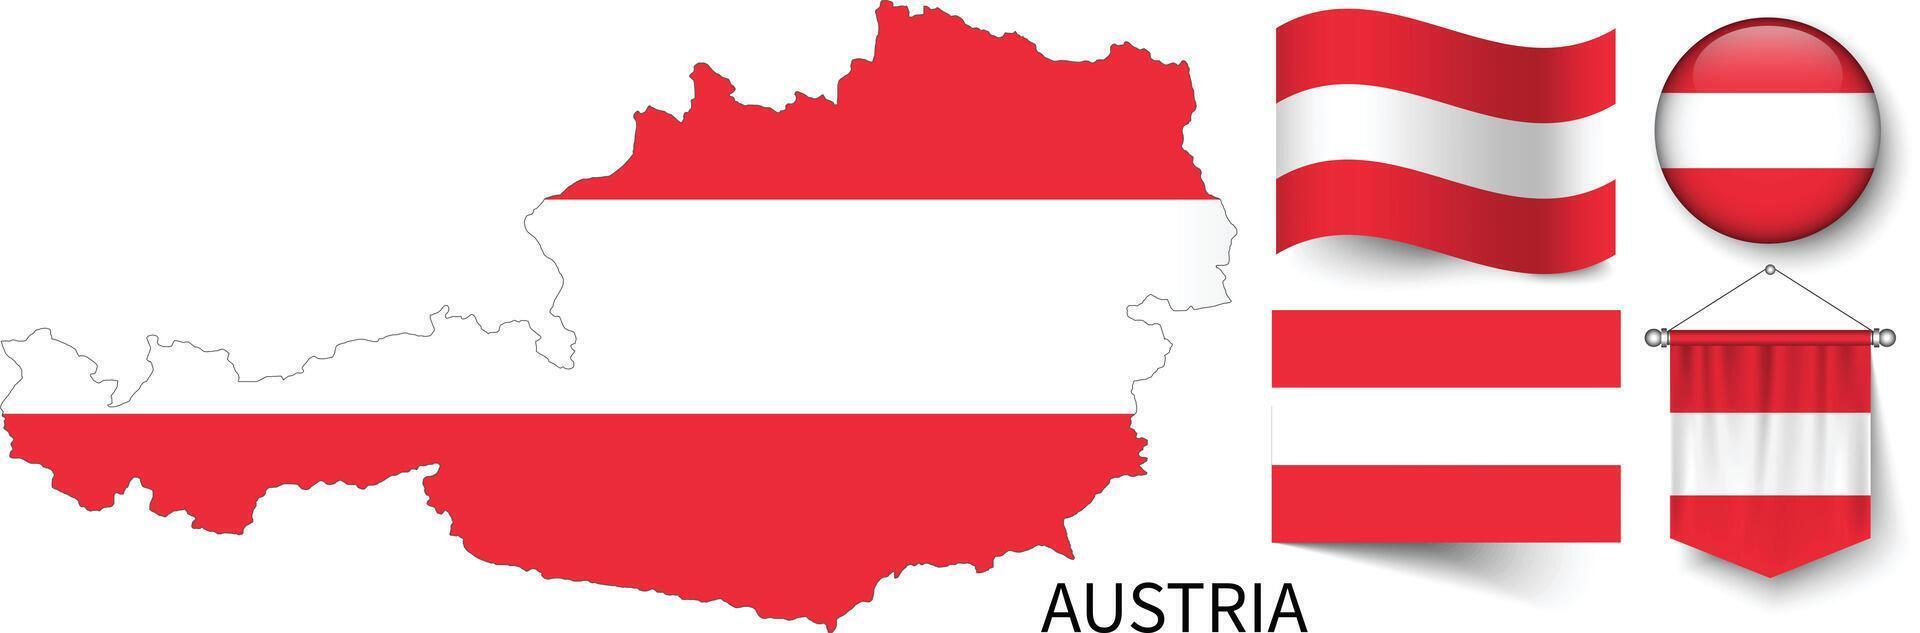 de divers patronen van de Oostenrijk nationaal vlaggen en de kaart van oostenrijk borders vector